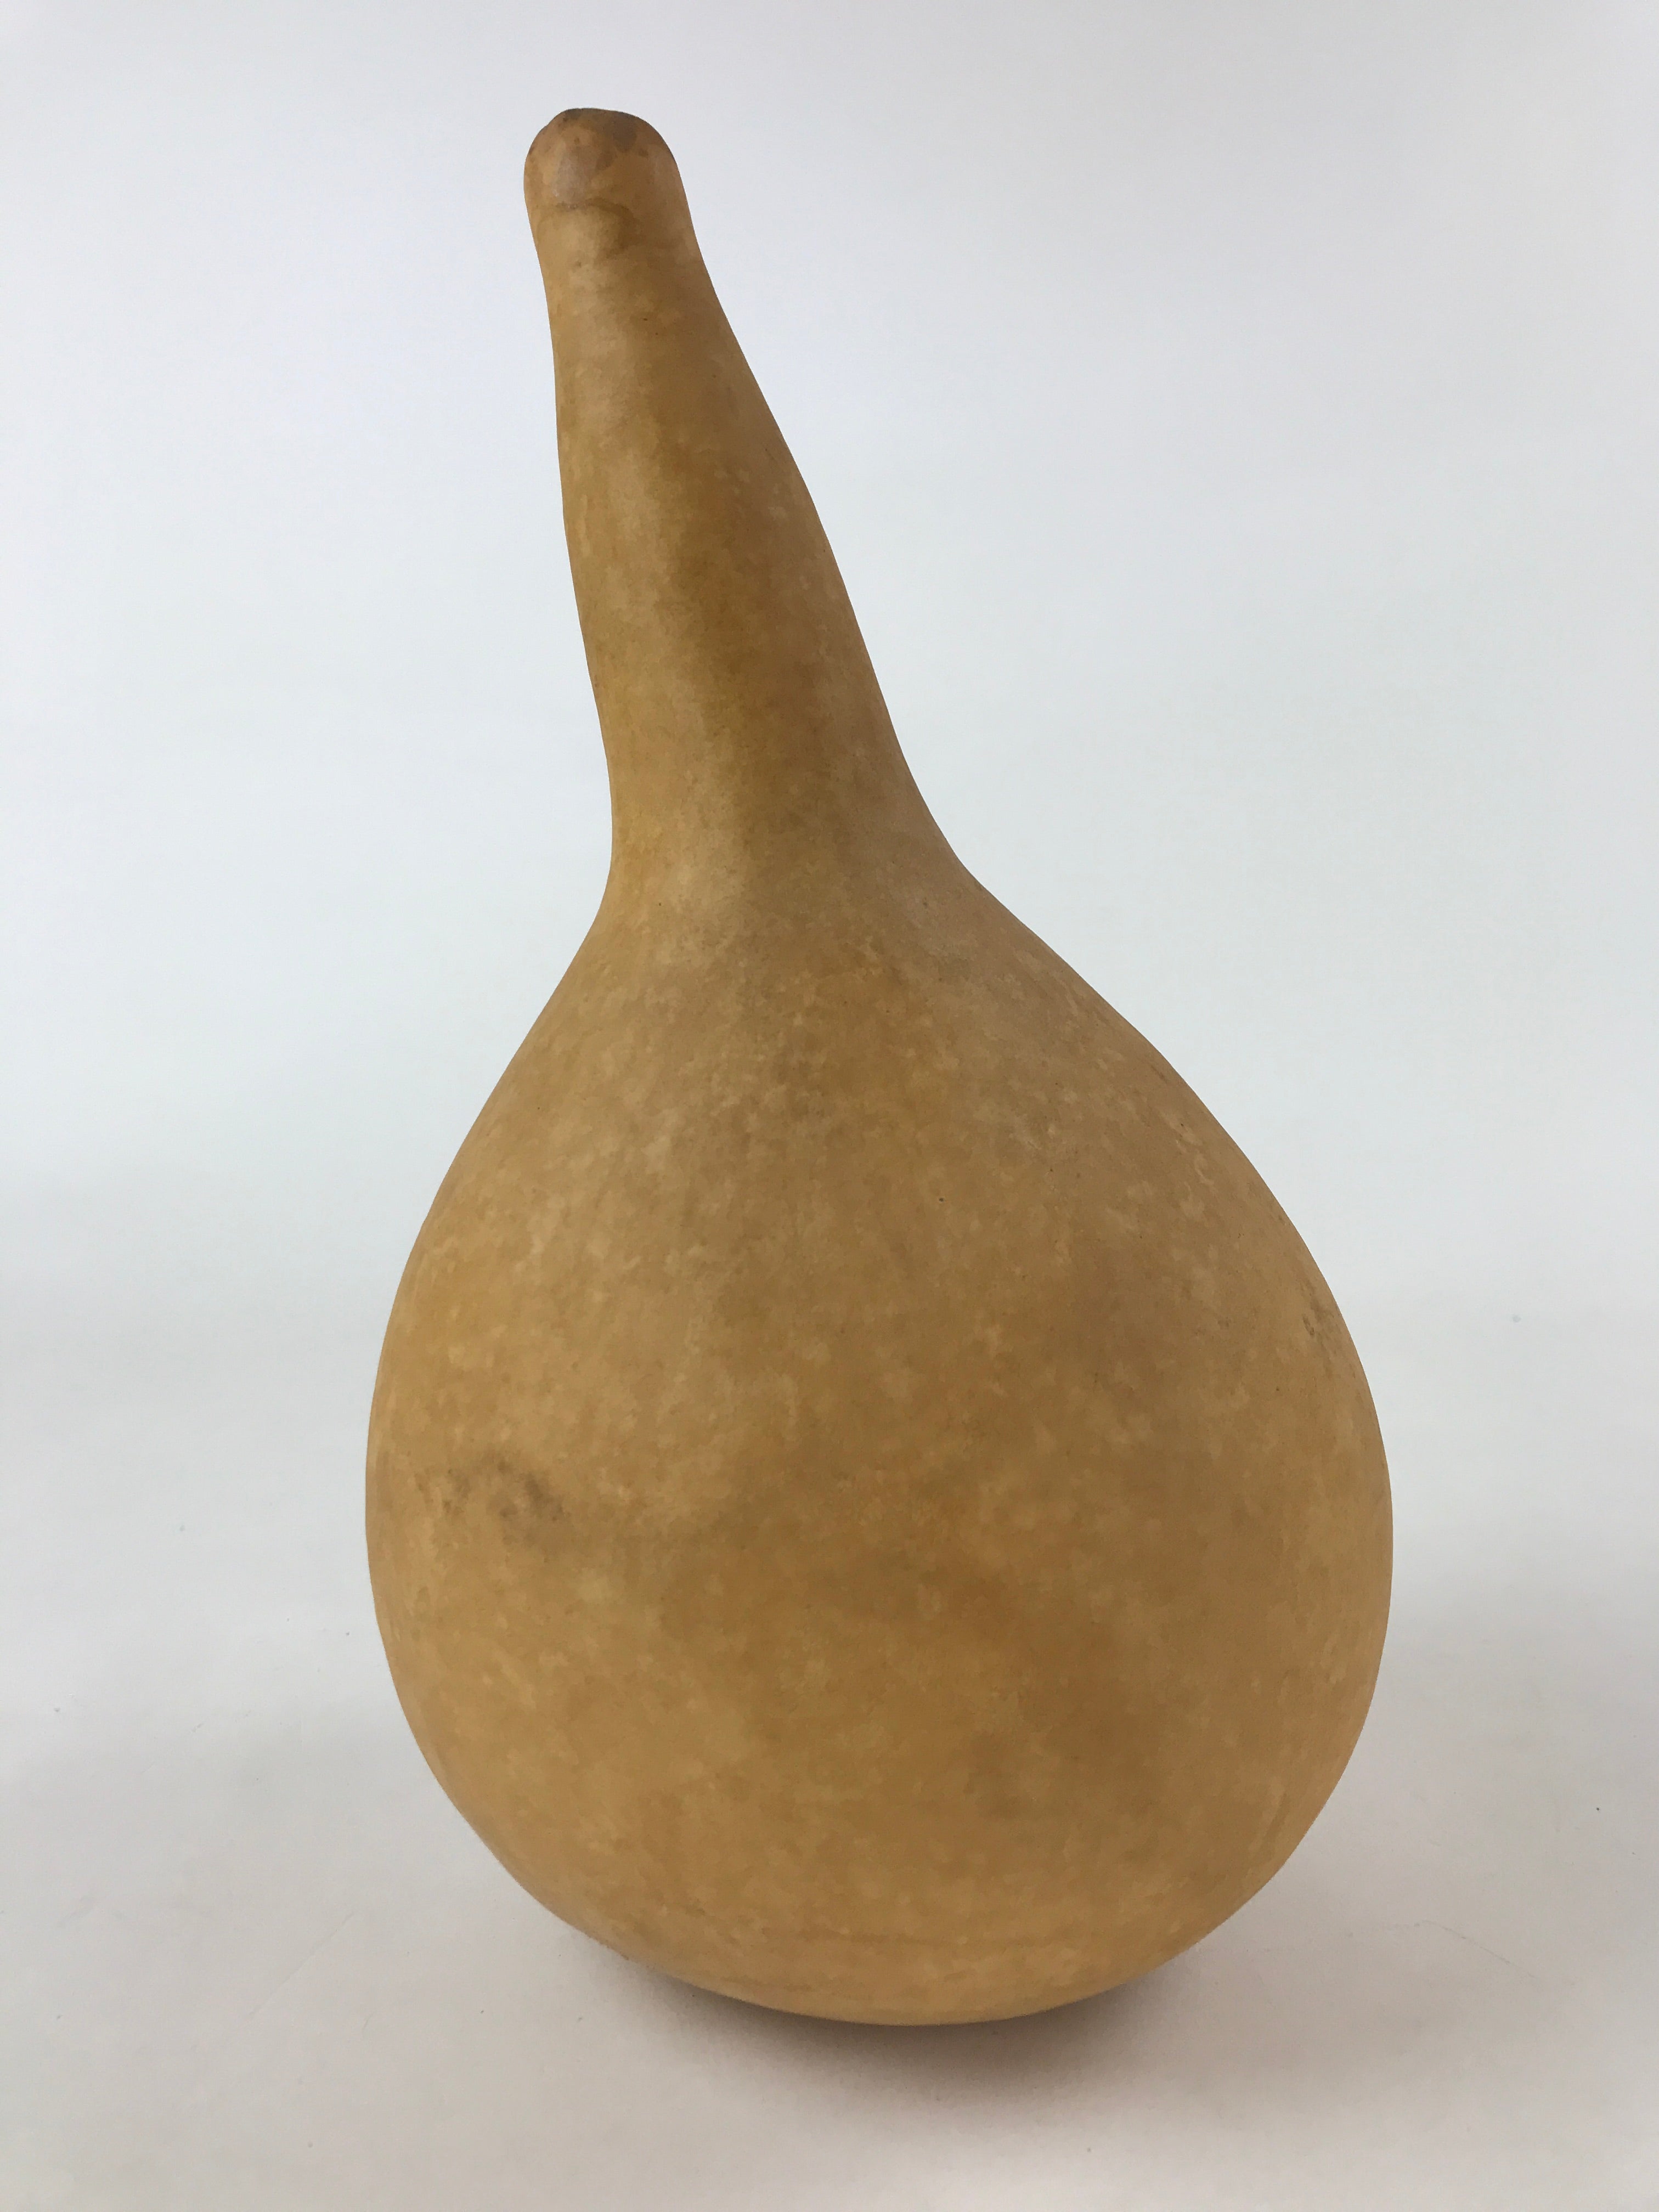 Japanese Natural Hyotan Gourd Vtg Sake Bottle Lucky Charm Large Calabash G251